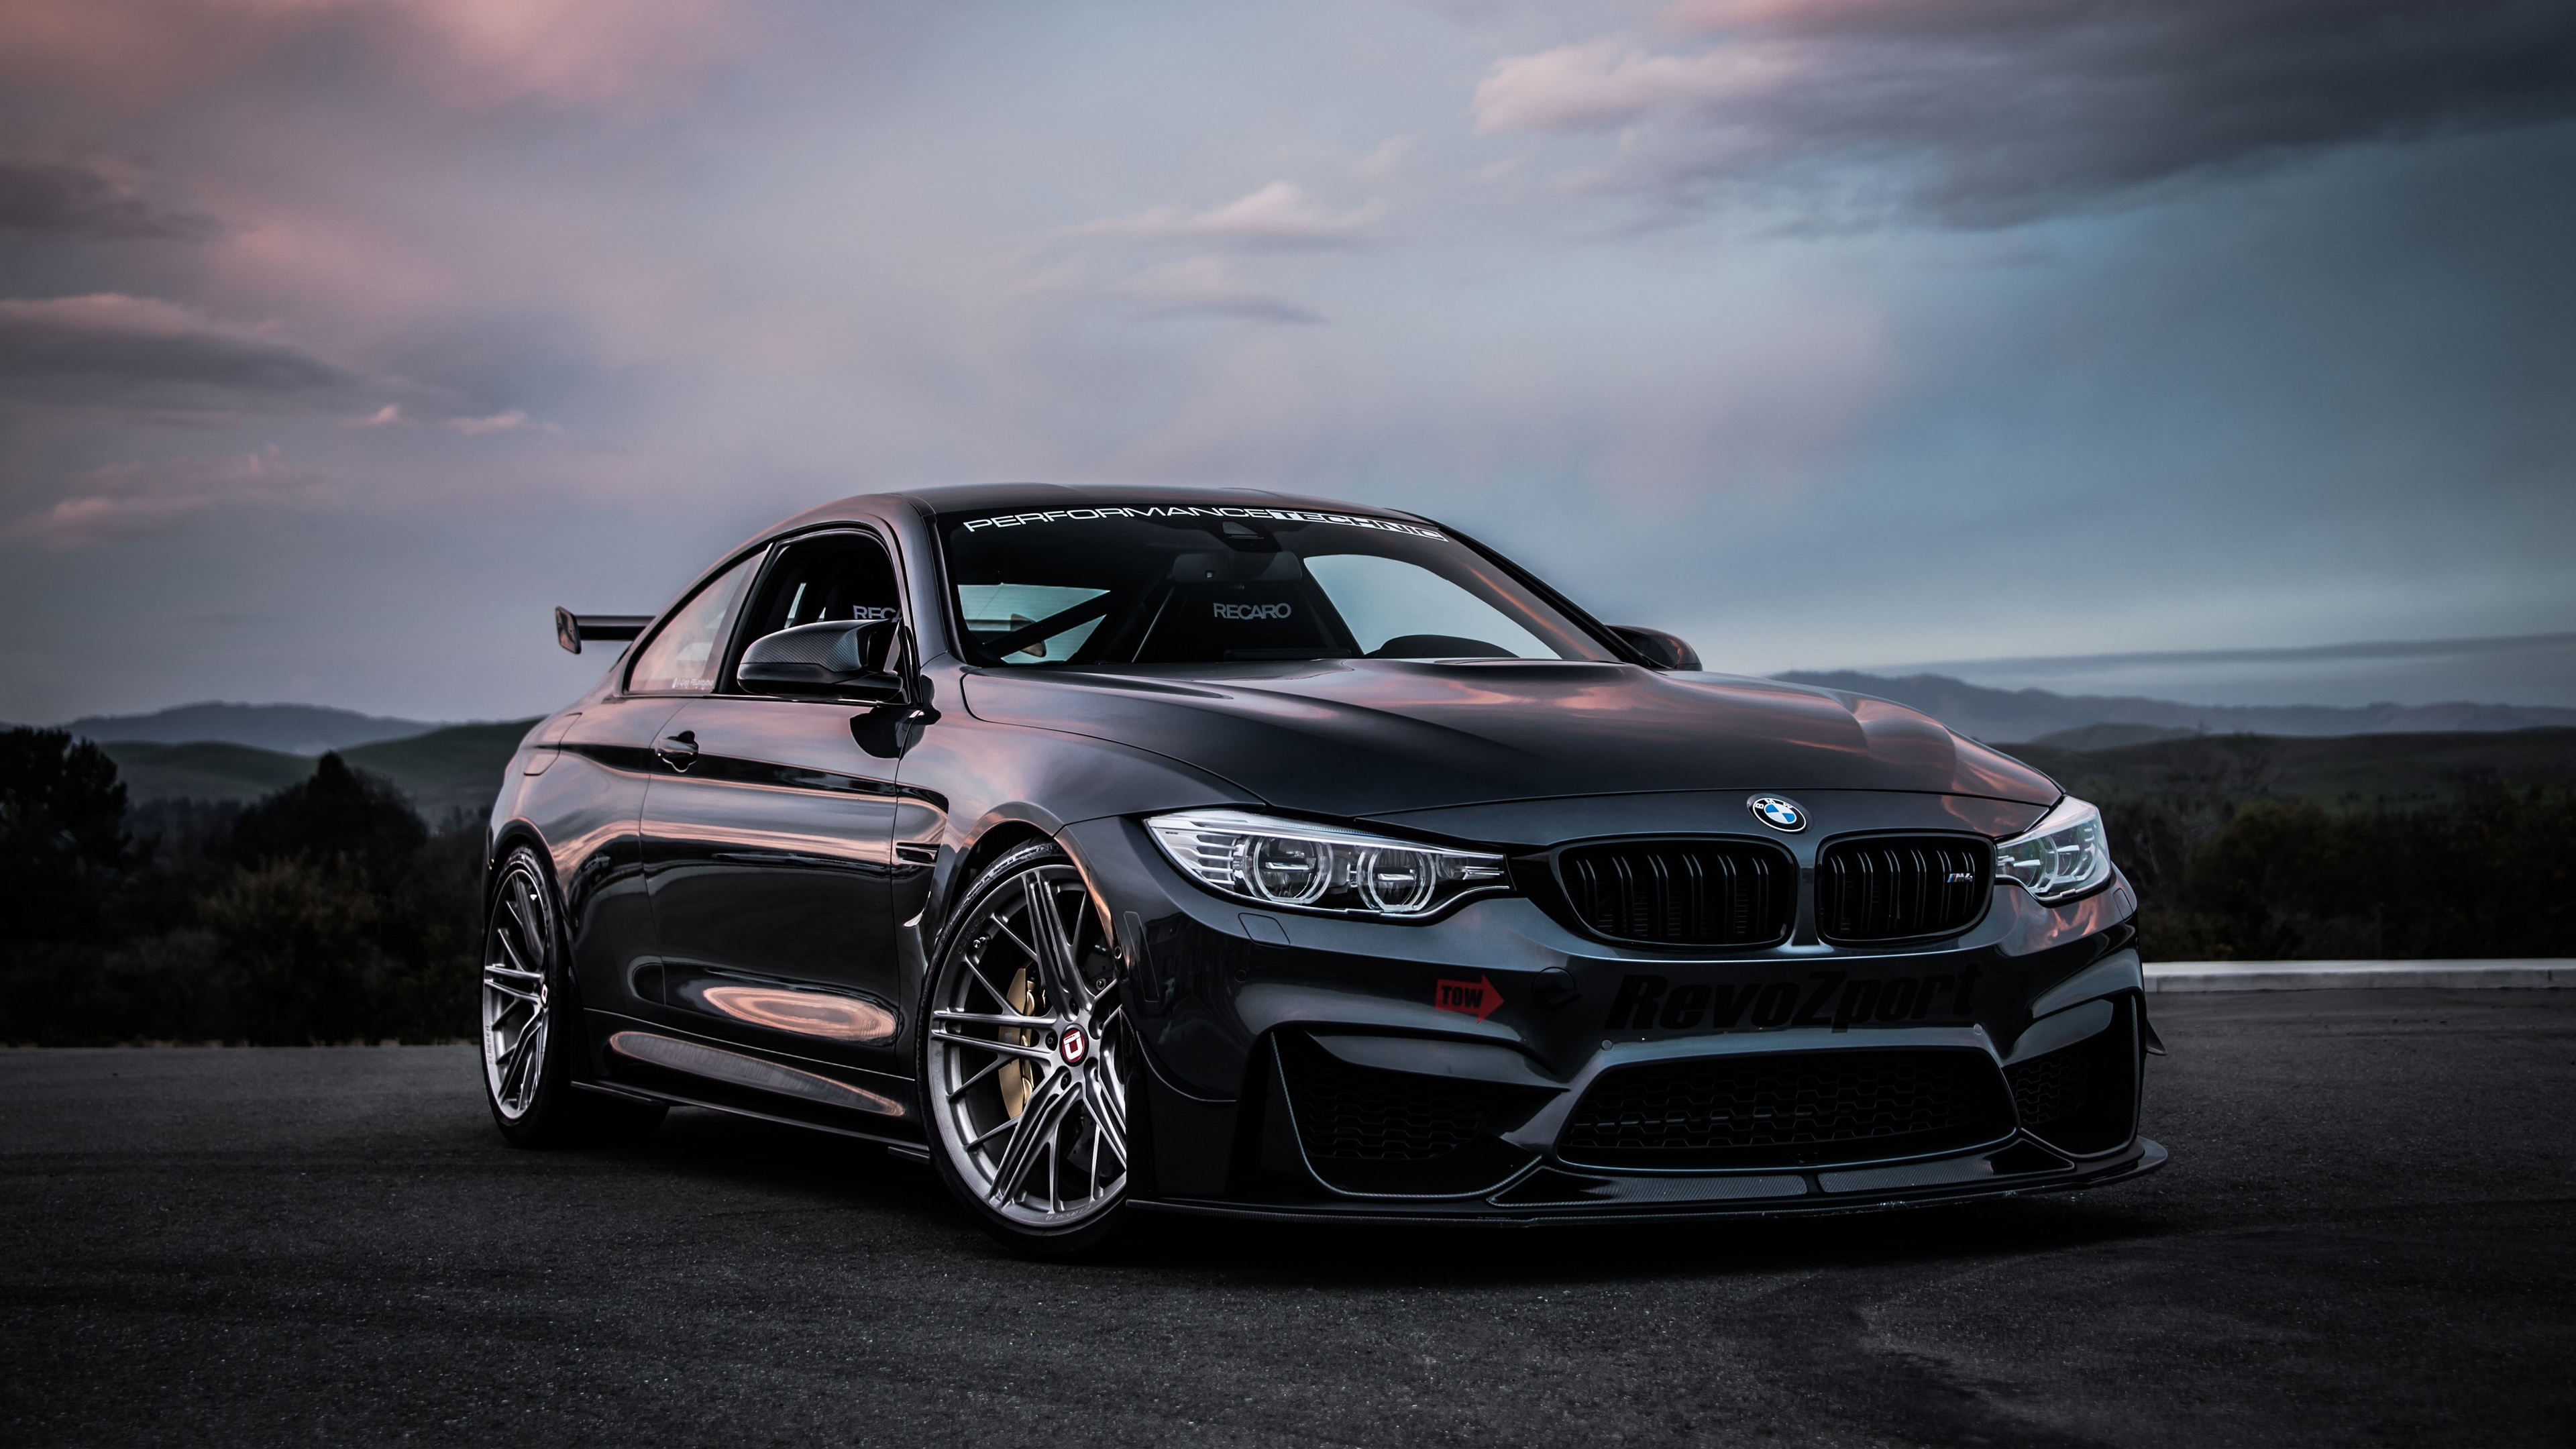 BMW M4, Performance tuning, Striking black design, 3840x2160 4K Desktop